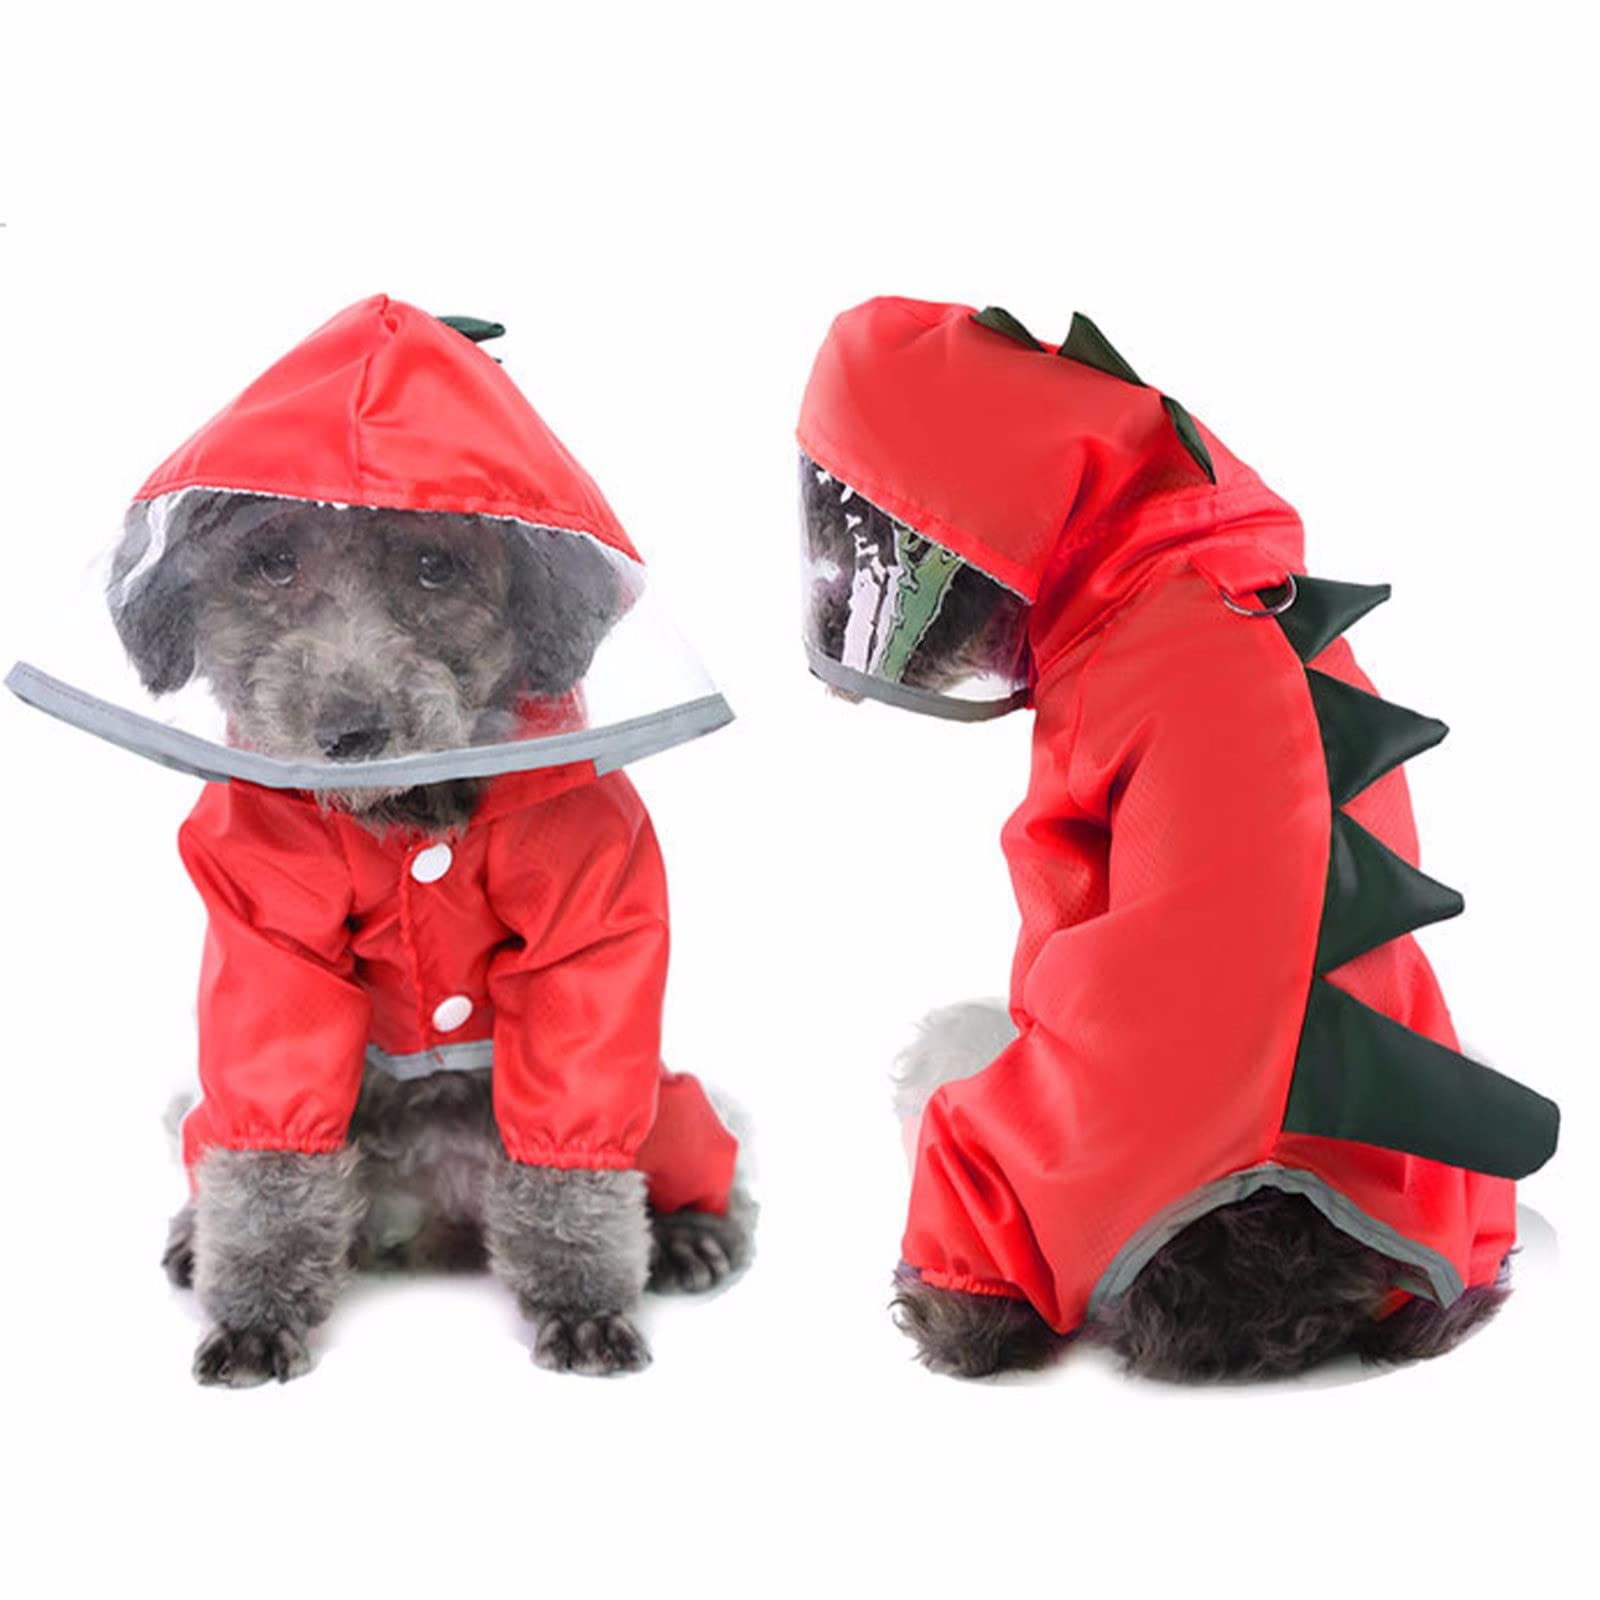 Hunde-Regenmantel mit Kapuze, wasserdichte Hundejacke, reflektierender Overall, Outdoor-Bekleidung mit Mesh-Futter, leicht und atmungsaktiv (Größe: S-XXL), Rot-XL